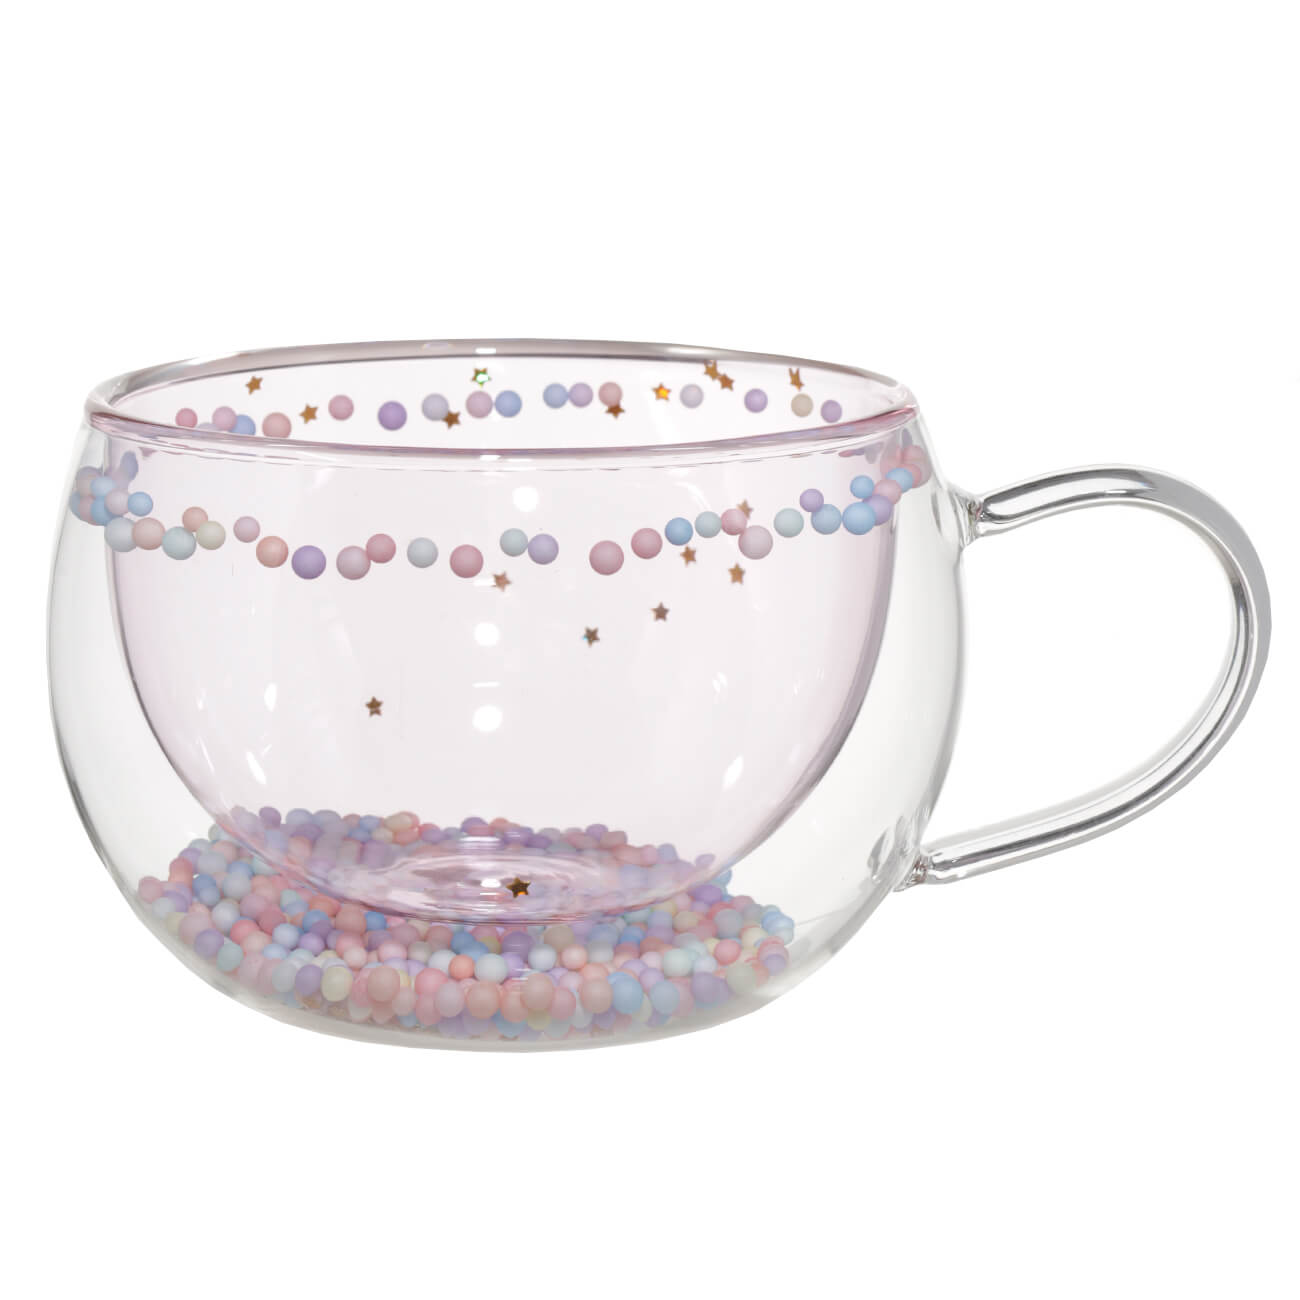 Кружка, 270 мл, с шариками, стекло Б, розовая, Звезды, Air sparkly изображение № 1